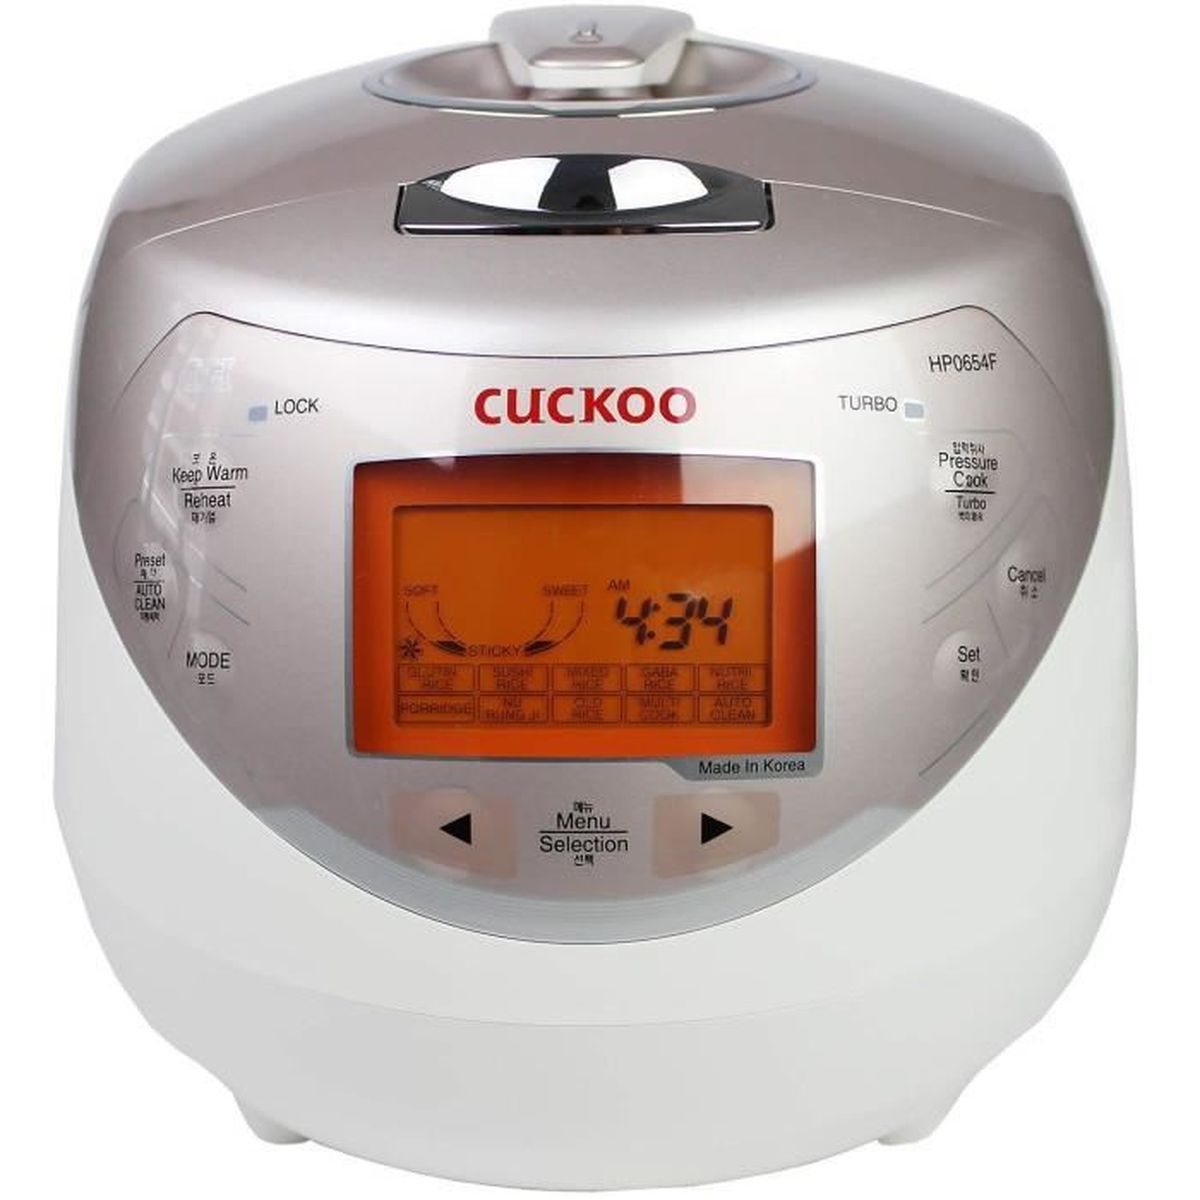 avec pression de vapeur et technologie Fuzzy Logic Cuiseur à riz à induction numérique Cuckoo CRP-HP0654F 1,08 l / 1040 W / 220 V–240 V riz pour 4 personnes maximum 